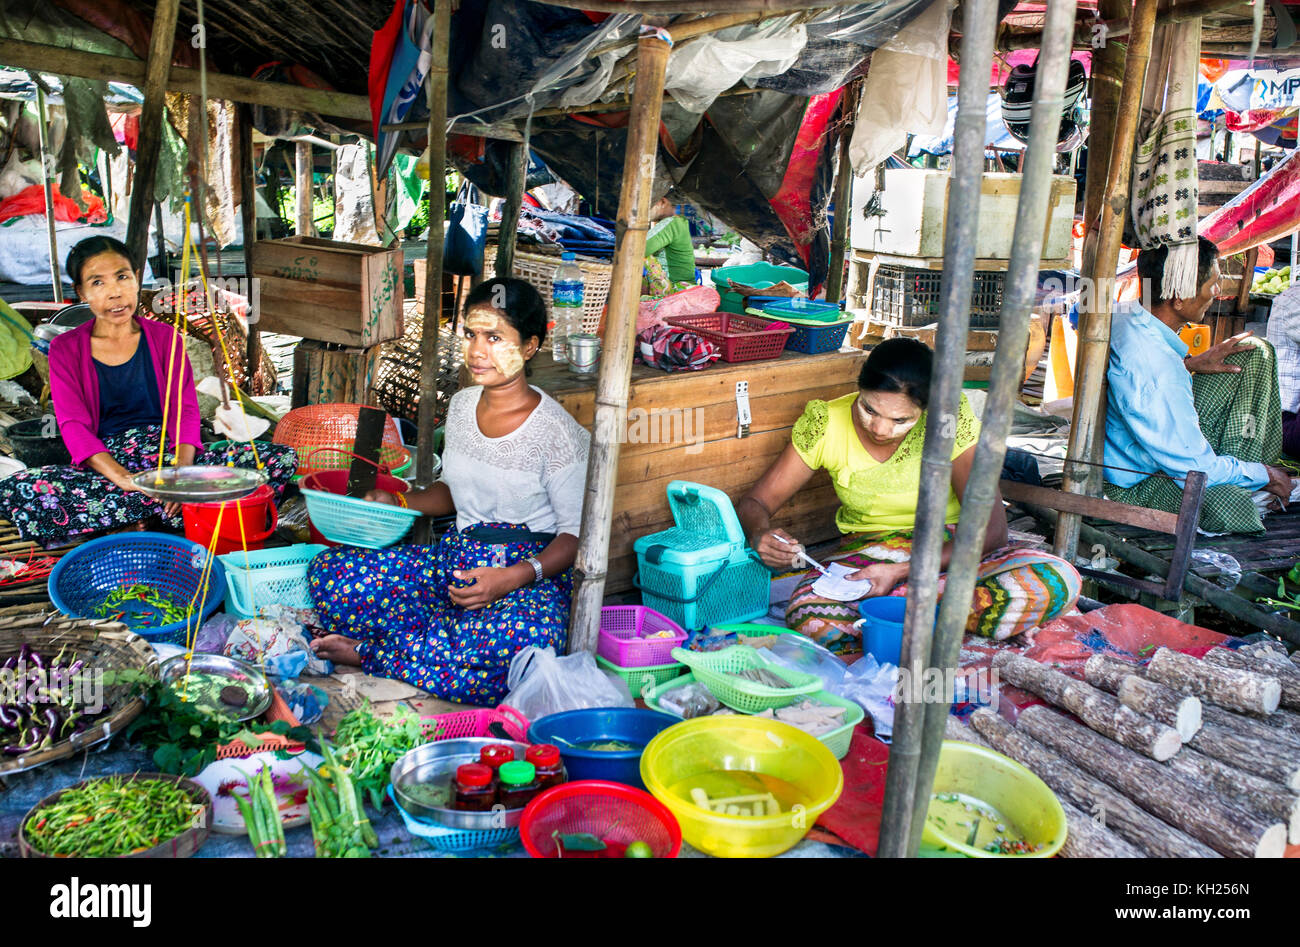 Birmano birmano (proveedores) en el mercado local de dala Myanmar (Birmania). Foto de stock